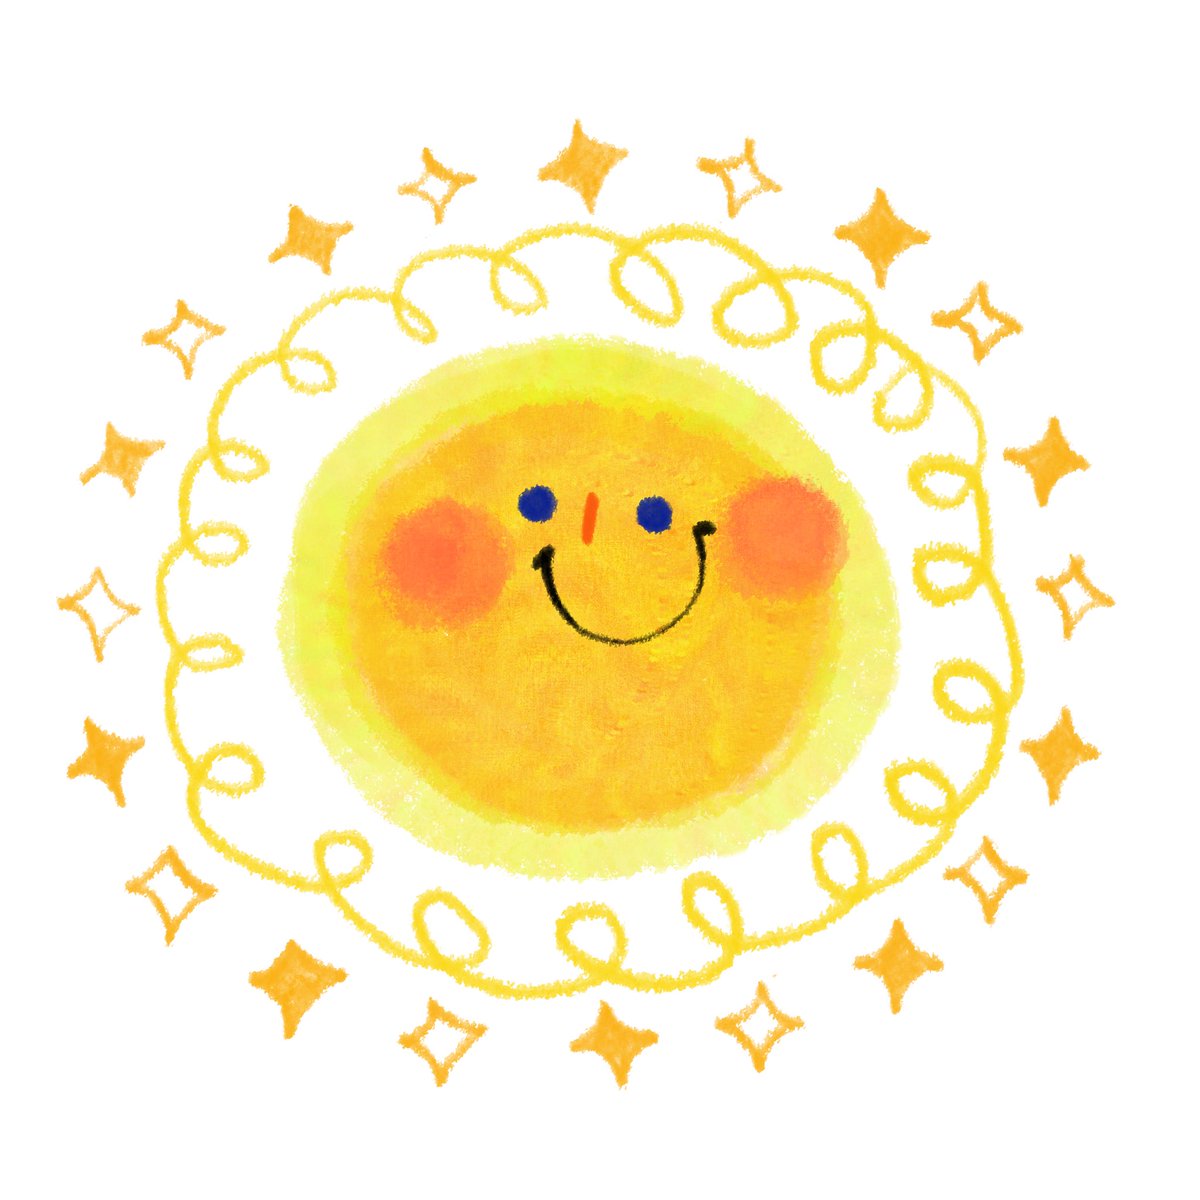 たはらともみ / イラスト&えほん no Twitter: "#ハッピーサンシャインデー 太陽のイラストはお仕事でもかなりたくさん描いてますが、気持ちも明るくなります????  絵本「おひさまのおうさま」もラインスタンプもカーステッカーも引き続きよろしくお願いしますー✨ https://t ...